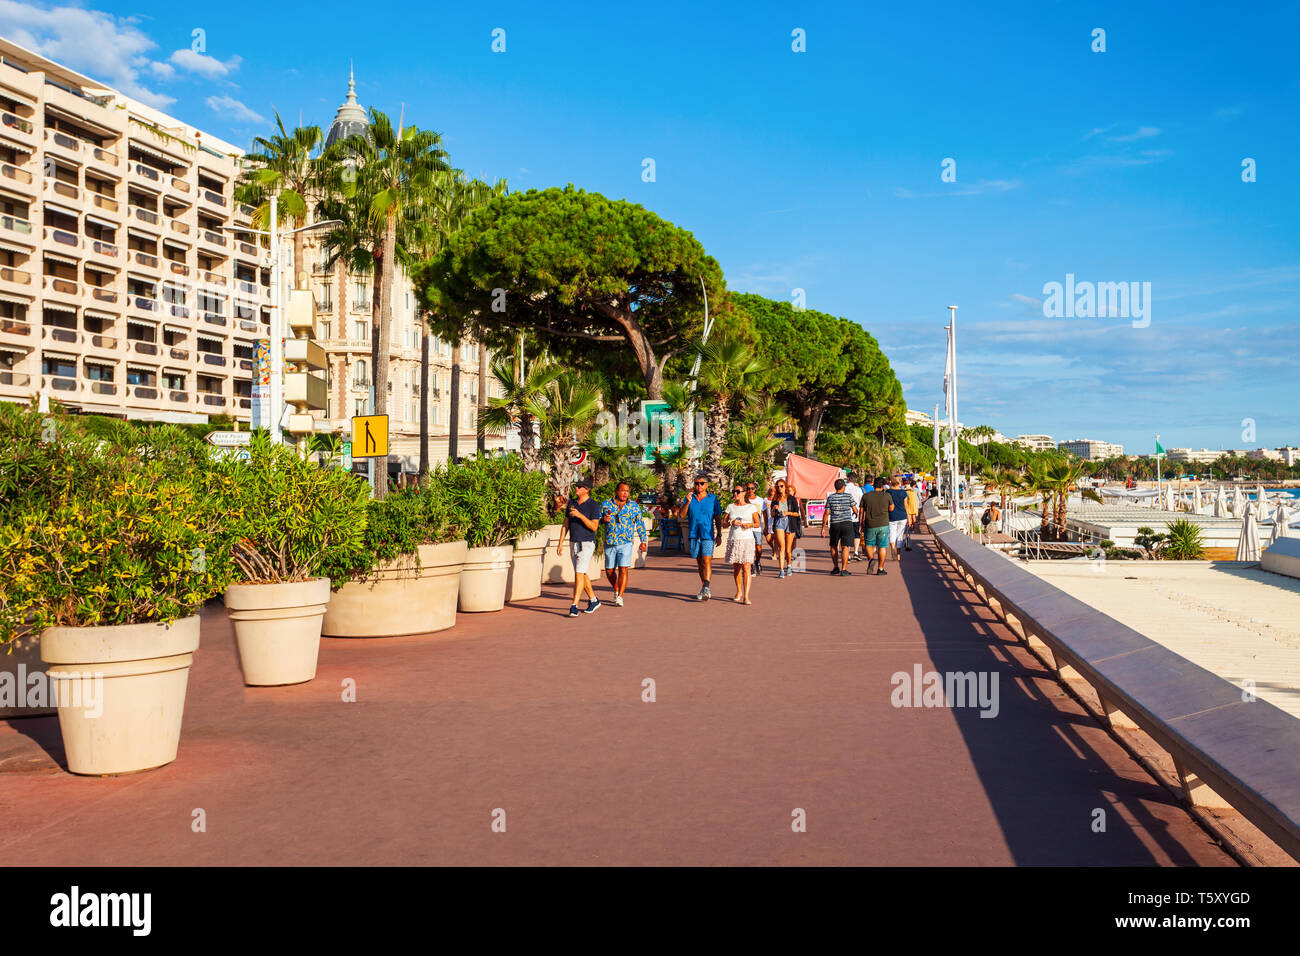 CANNES, Francia - 24 settembre 2018: Promenade de la Croisette o il Boulevard de la Croisette è una strada di spicco nella città di Cannes in Francia Foto Stock